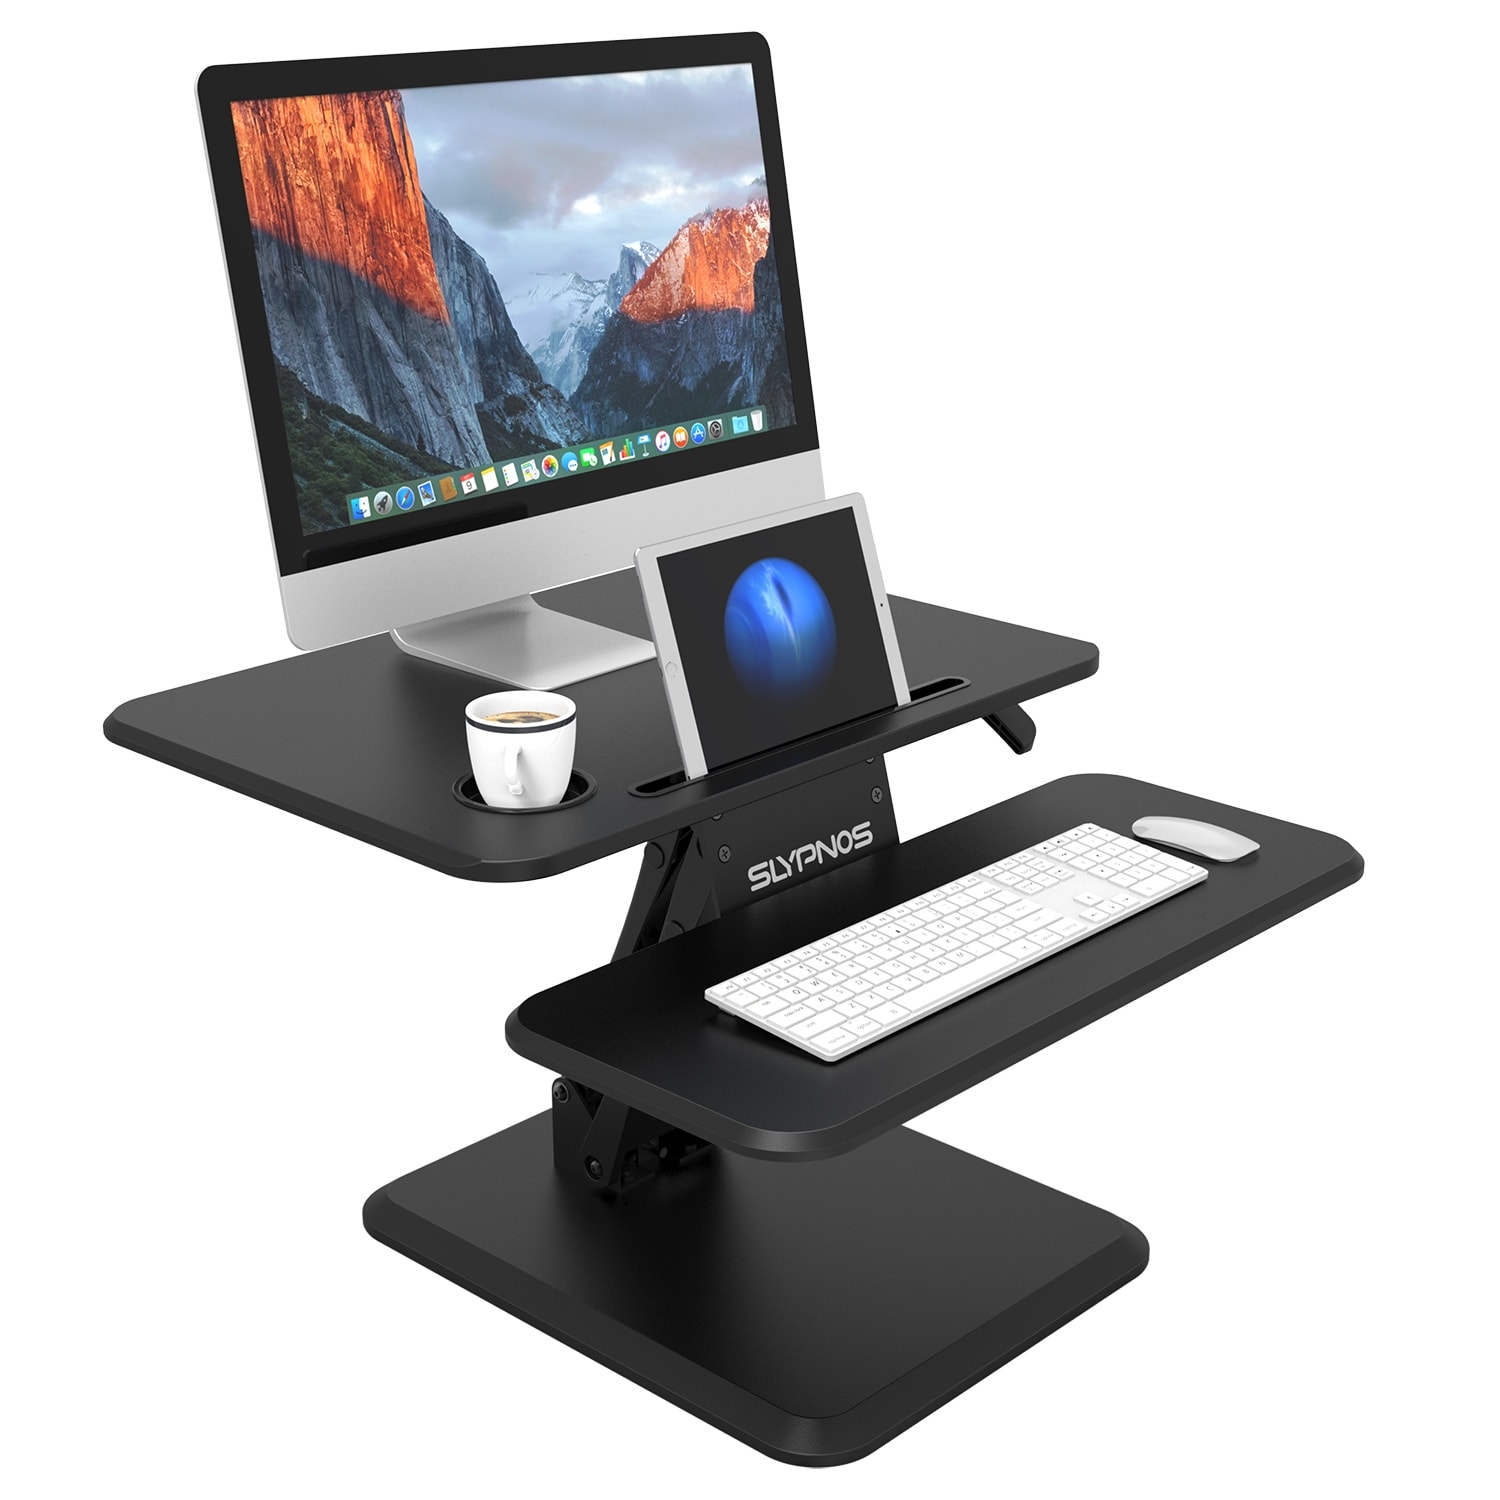 Shop Slypnos Manual Height Adjustable Standing Desk Converter Sit